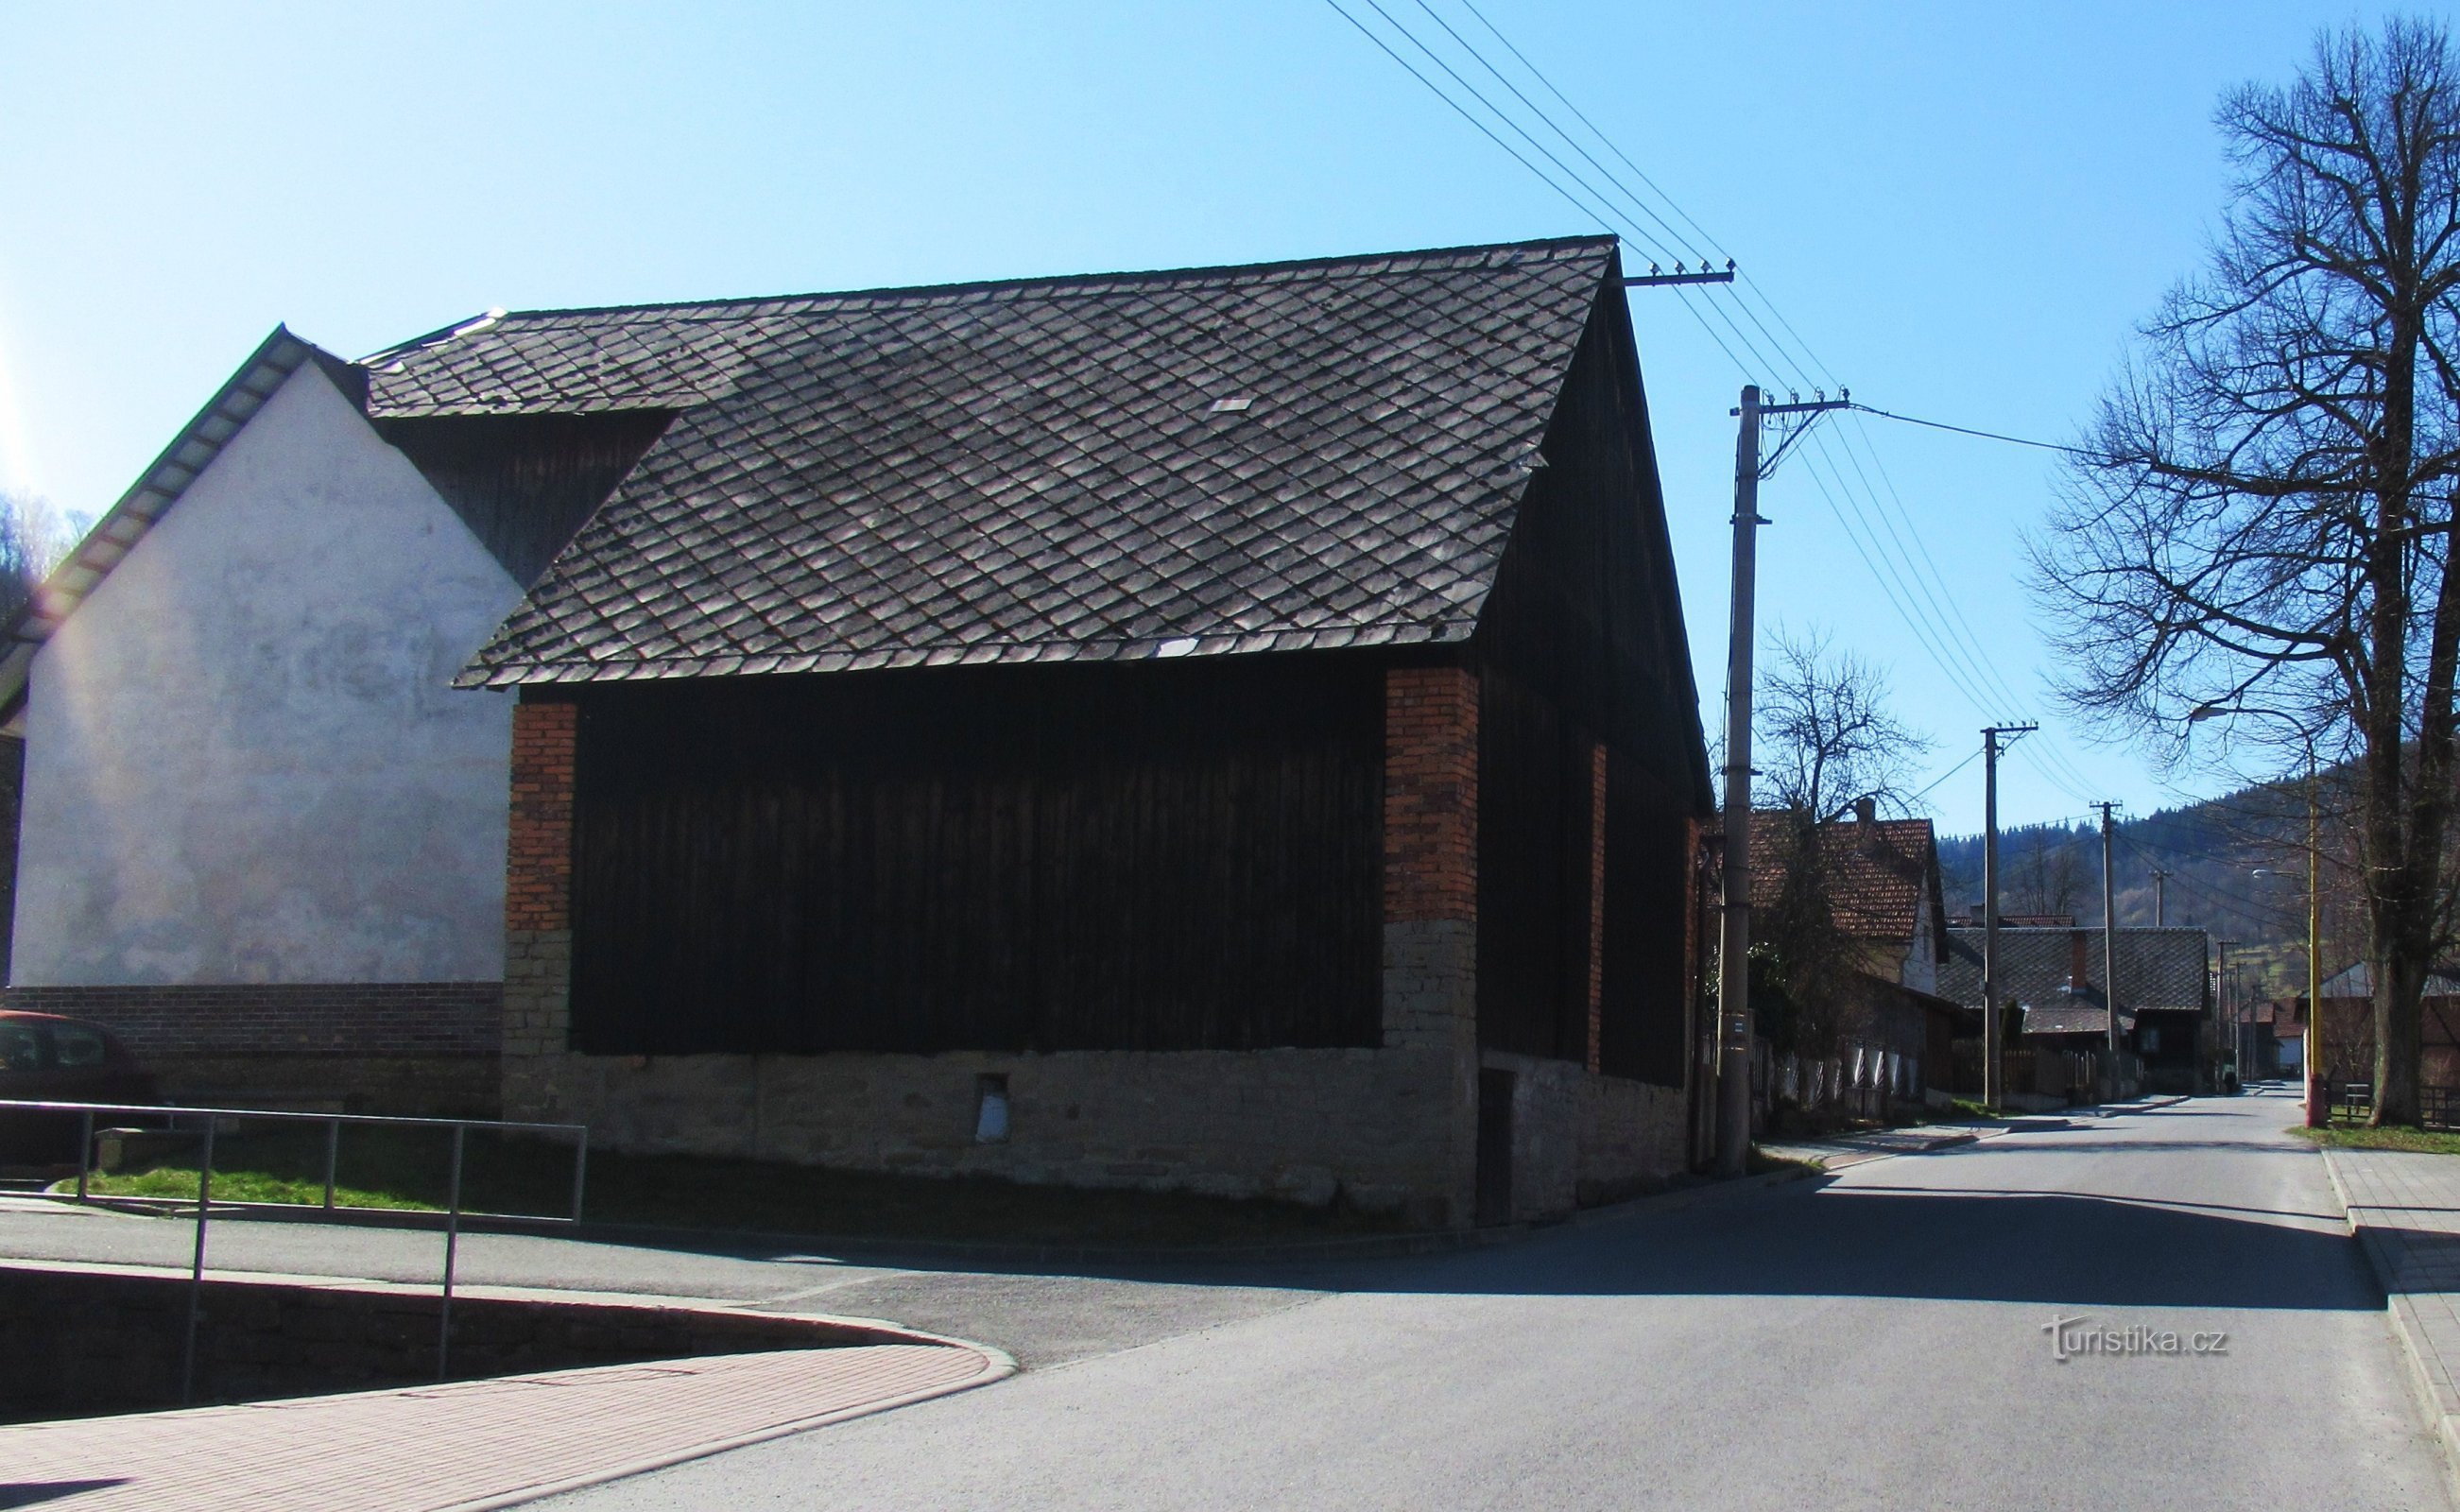 Il villaggio di Zděchov in Valacchia